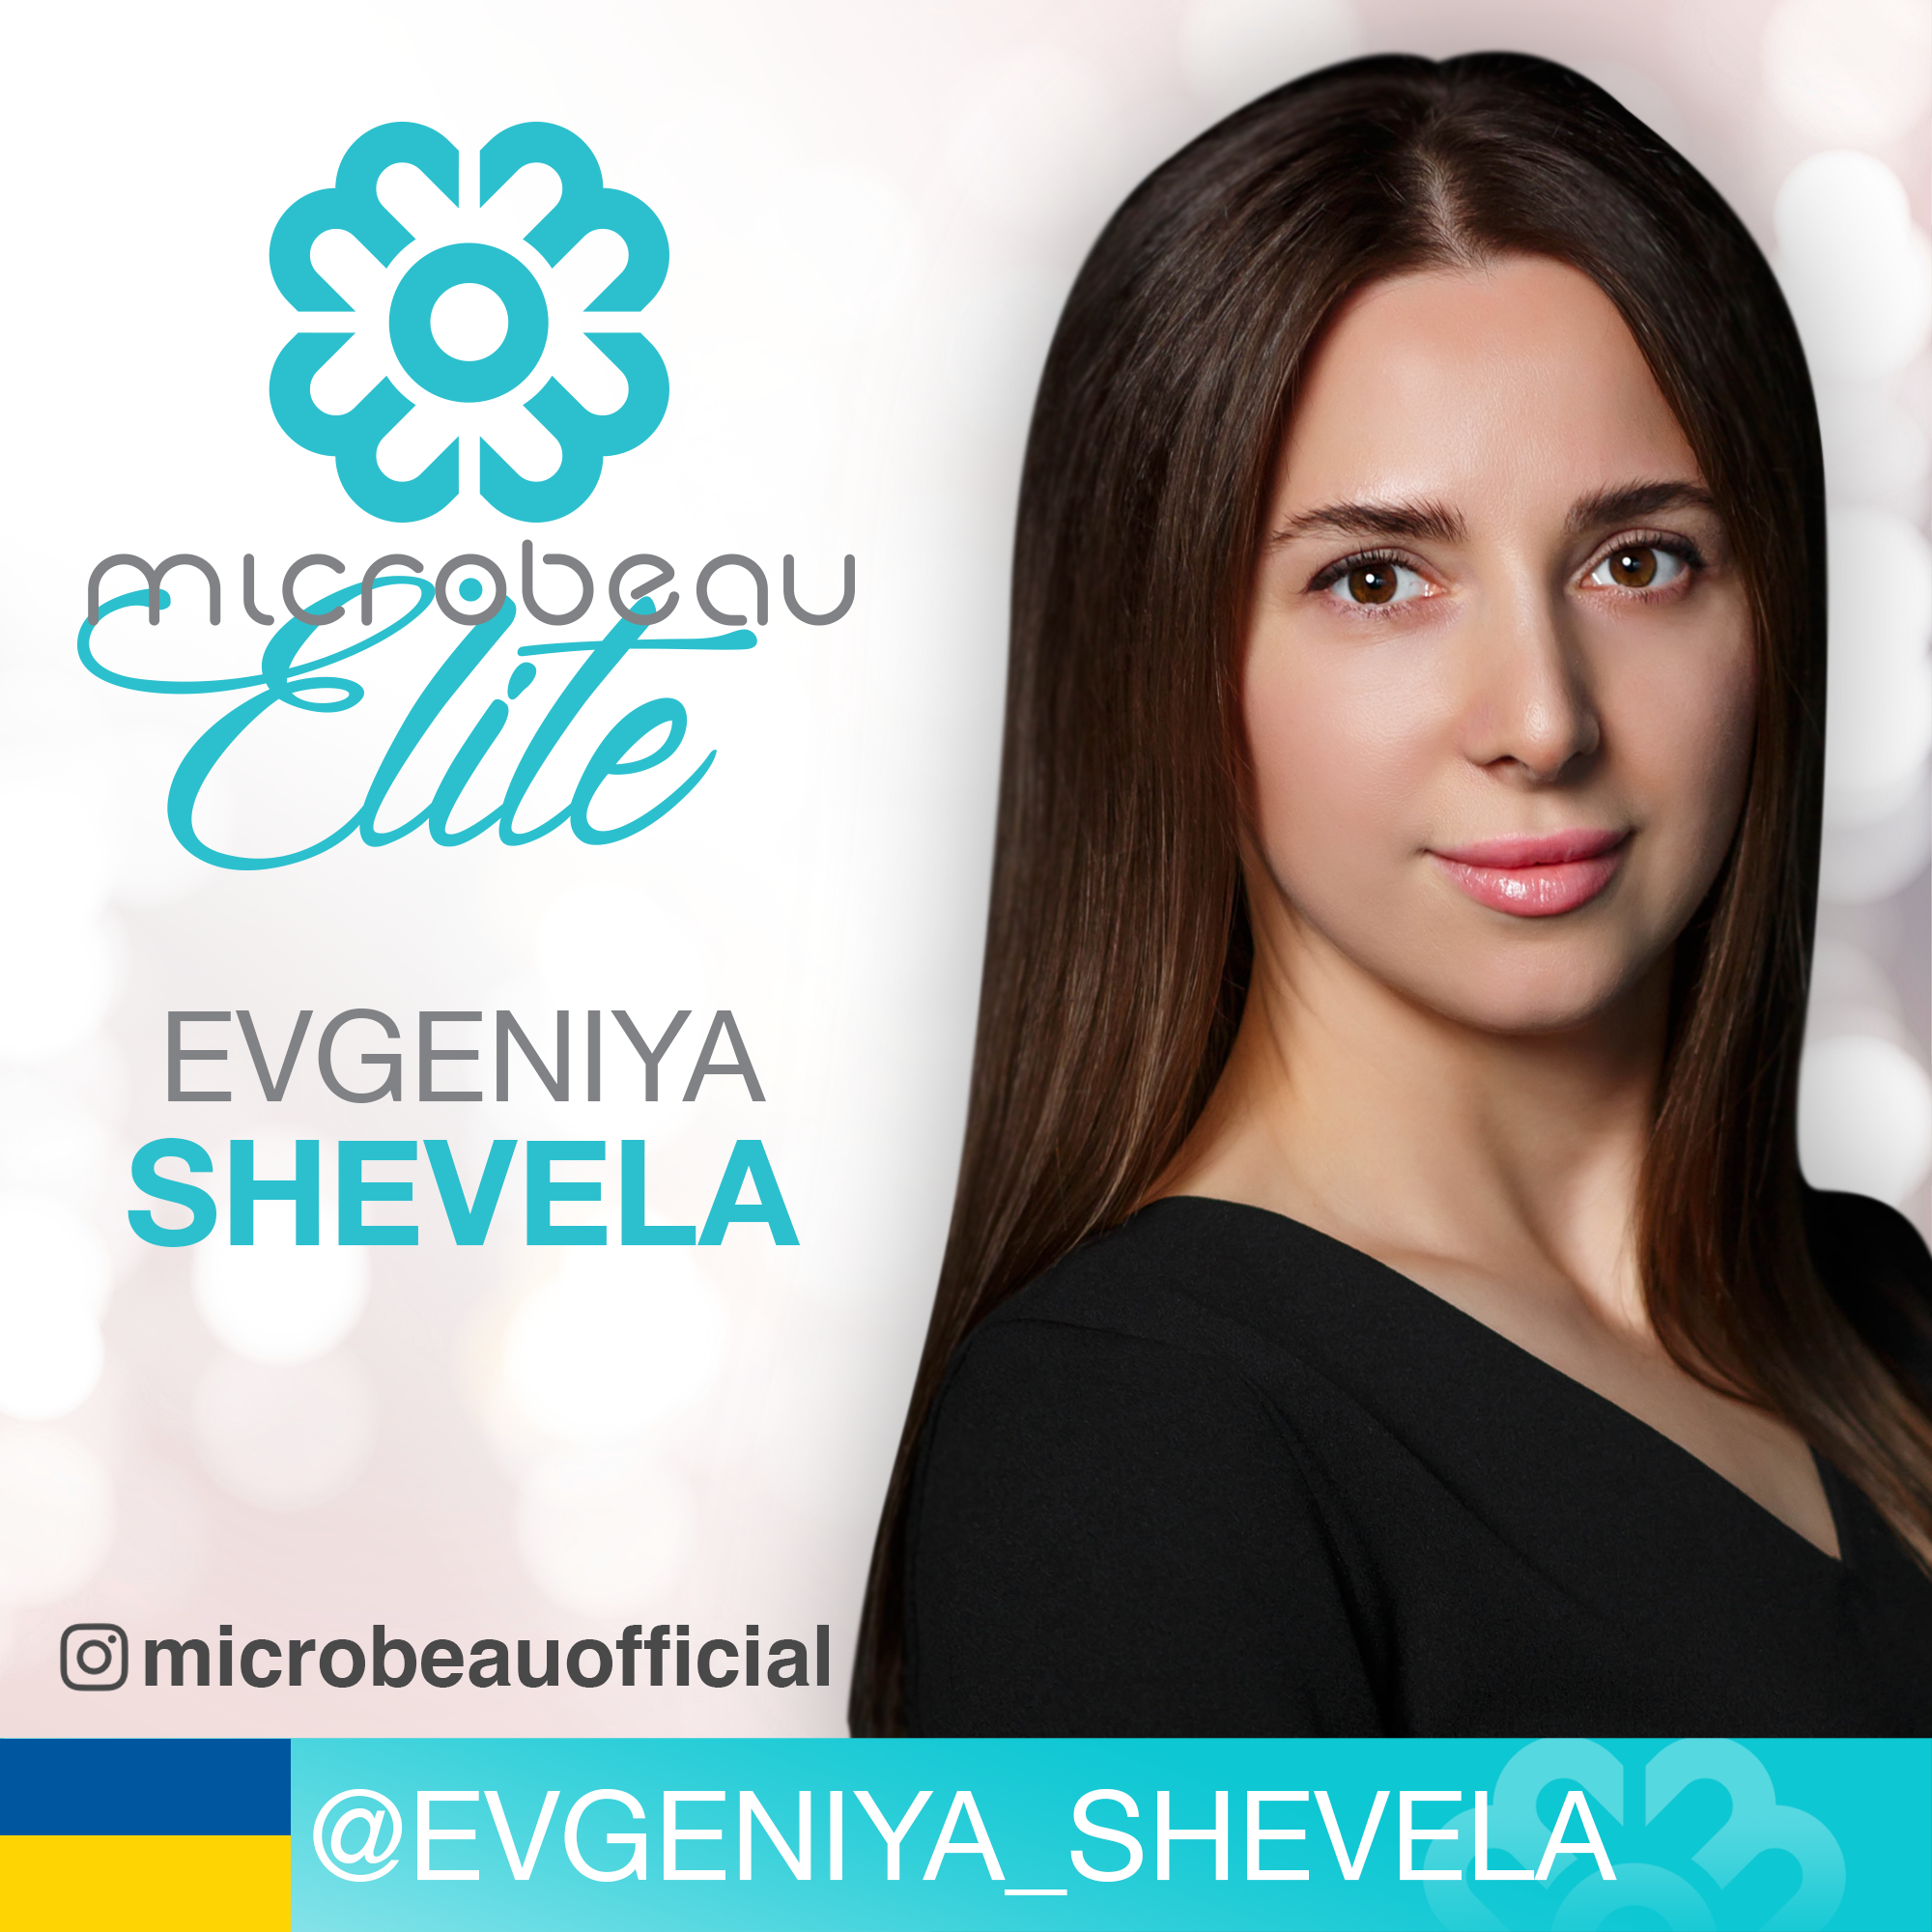 Evgeniya Shevela